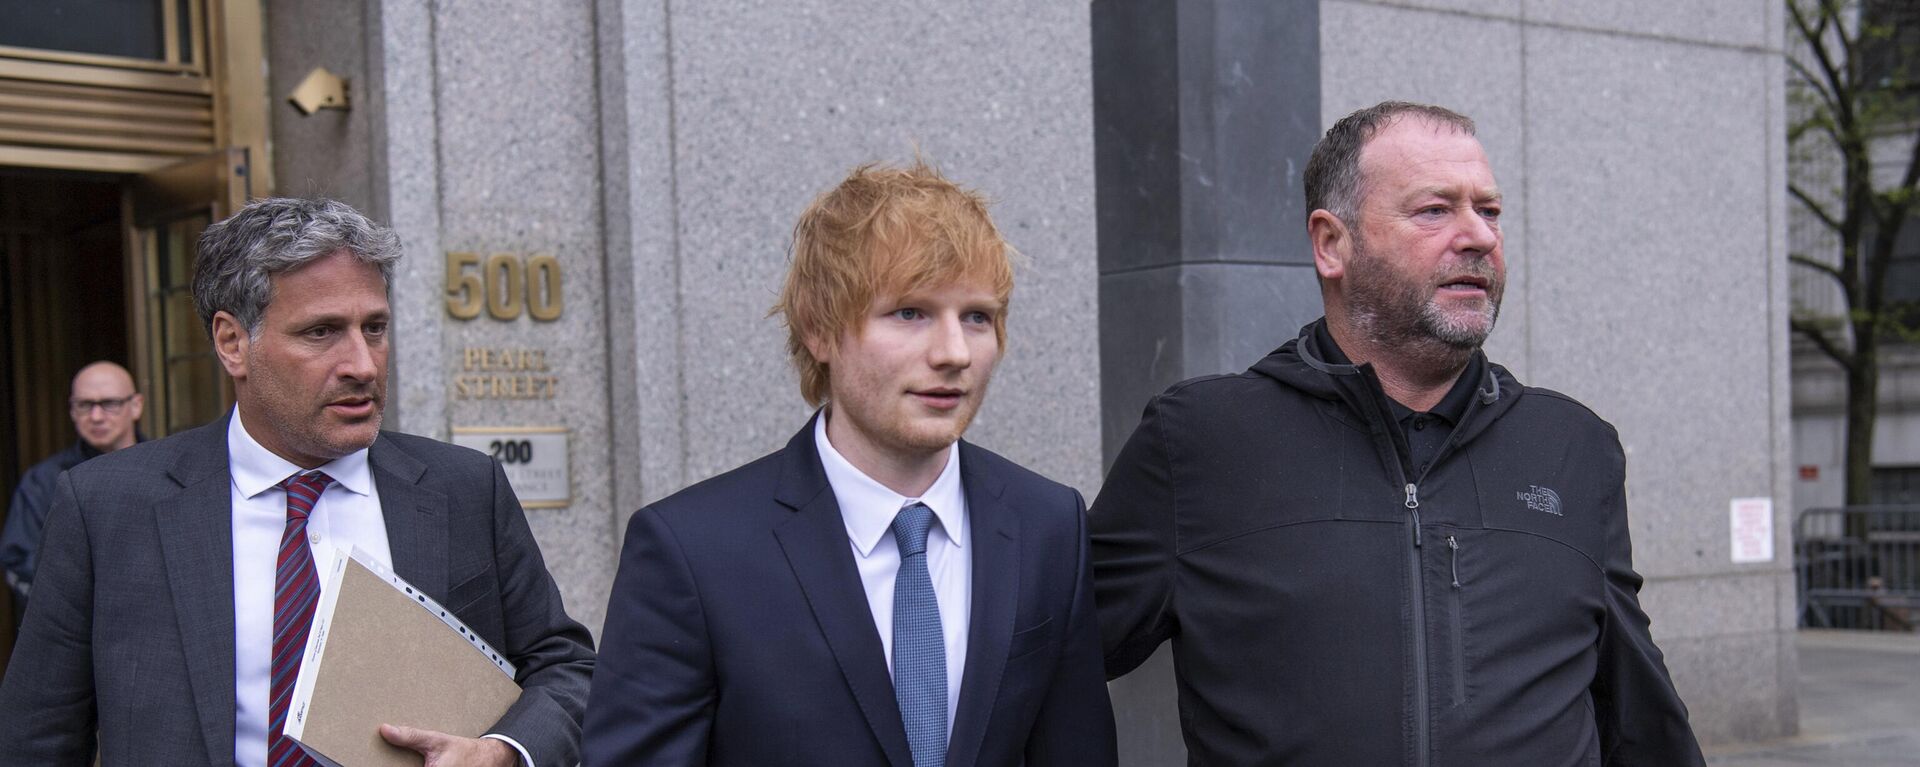 İngiliz şarkıcı ve söz yazarı Ed Sheeran, Marvin Gaye’in 1973 yılında piyasaya çıkardığı 'Let’s Get In On' şarkısını çalmakla suçlanıyor. Kendisine yöneltilen suçlamaları reddeden şarkıcı, New York'ta görülen ilk mahkemeye katıldı. - Sputnik Türkiye, 1920, 26.04.2023